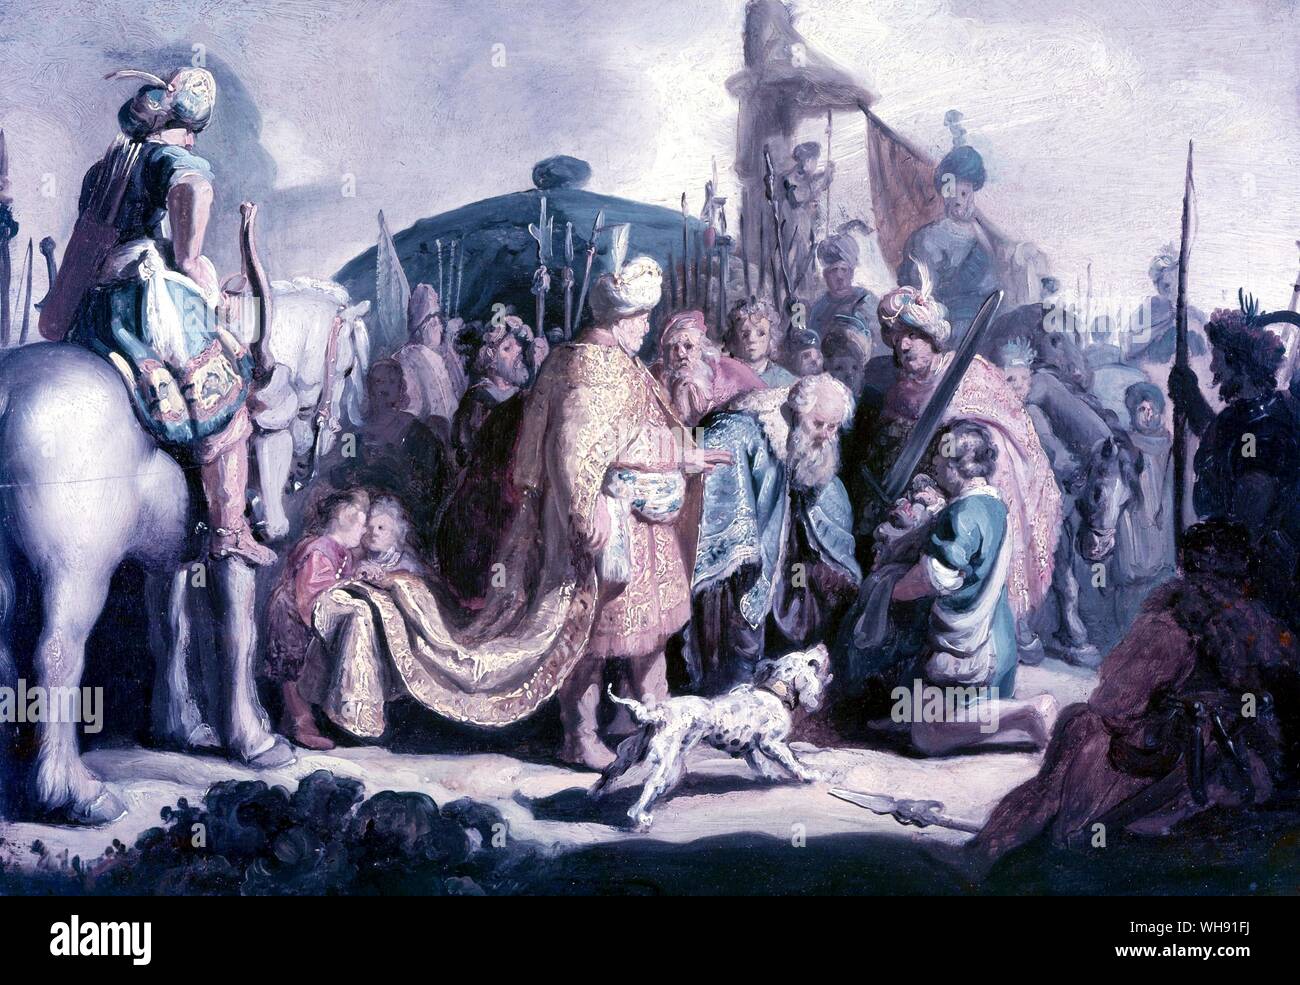 David, Leiter der Goliath zu Saul - 1627. von Rembrandt. in Basel Museum. Kunstmuseum, Basel, Schweiz. Rembrandt Harmenszoon van Rijn (Juli 15, 1606 - Oktober 4, 1669) gilt als einer der größten Maler der Europäischen Kunstgeschichte und der wichtigsten in der niederländischen Geschichte.. Stockfoto